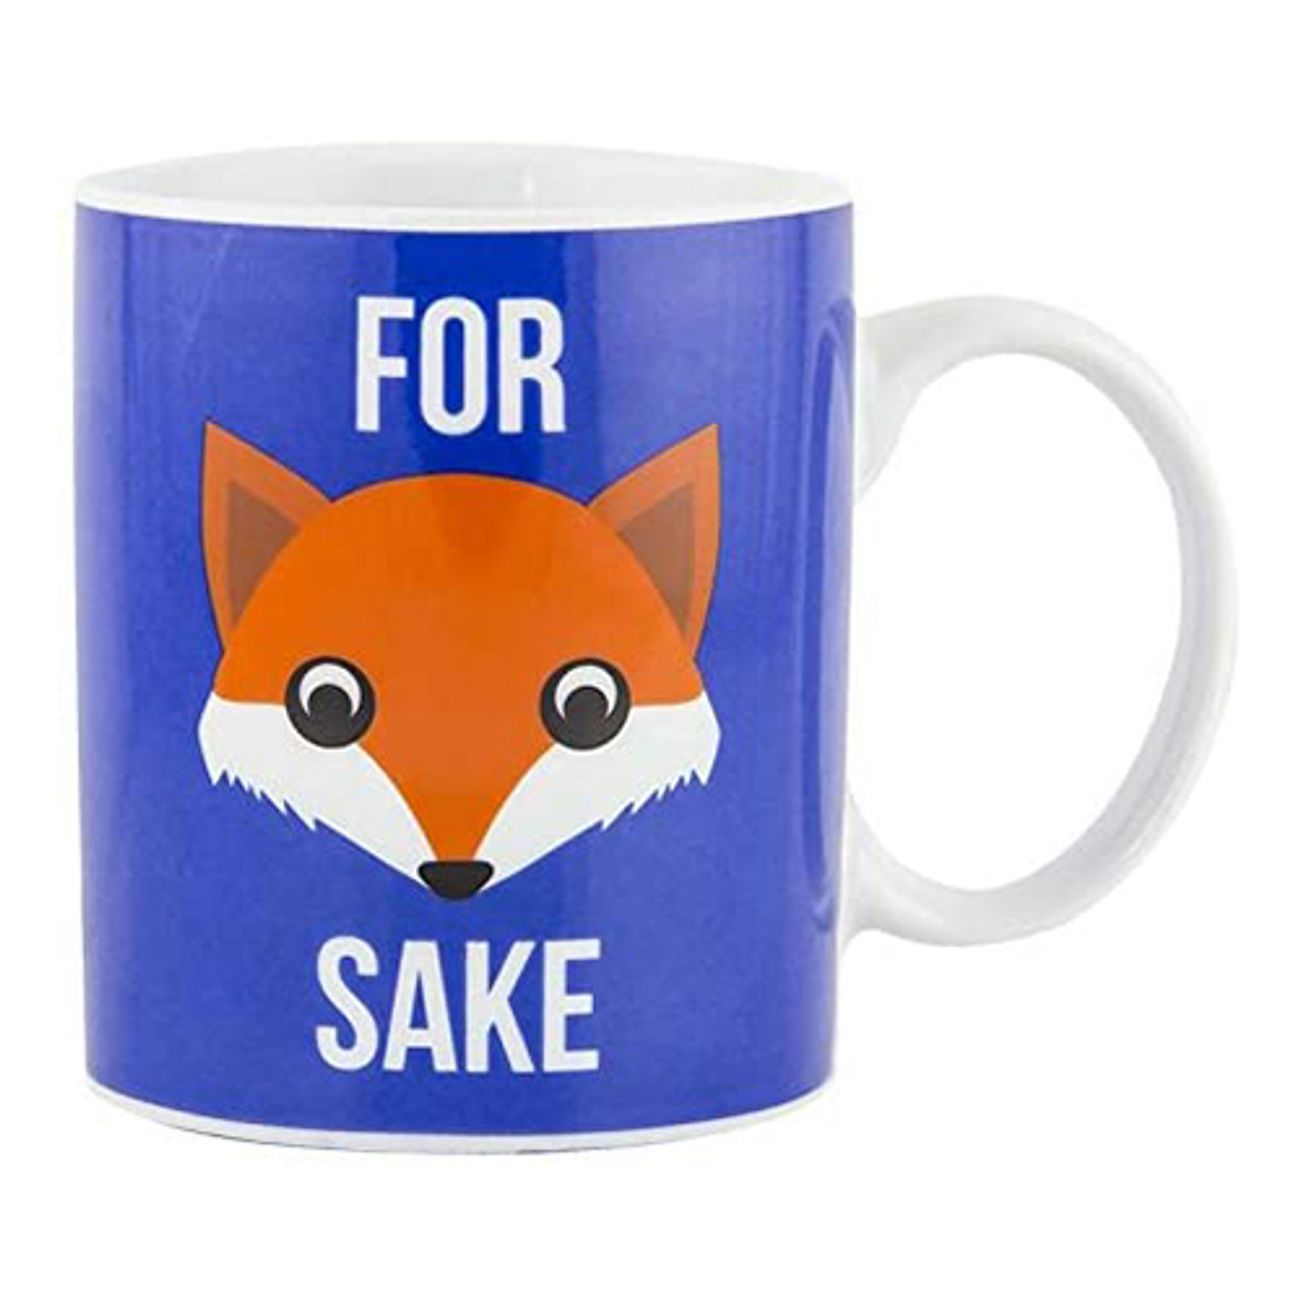 for-fox-sake-mugg-1